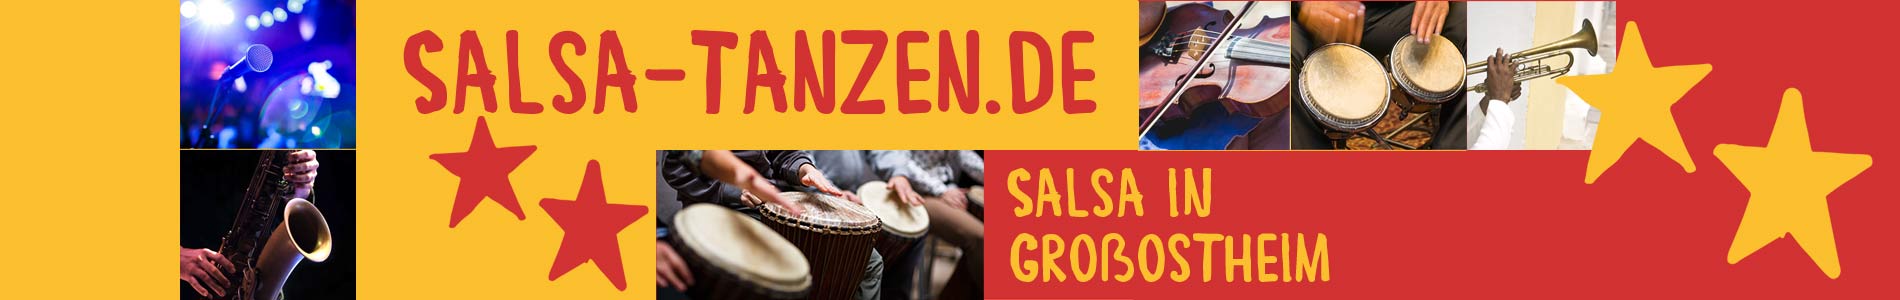 Salsa in Ostheim – Salsa lernen und tanzen, Tanzkurse, Partys, Veranstaltungen